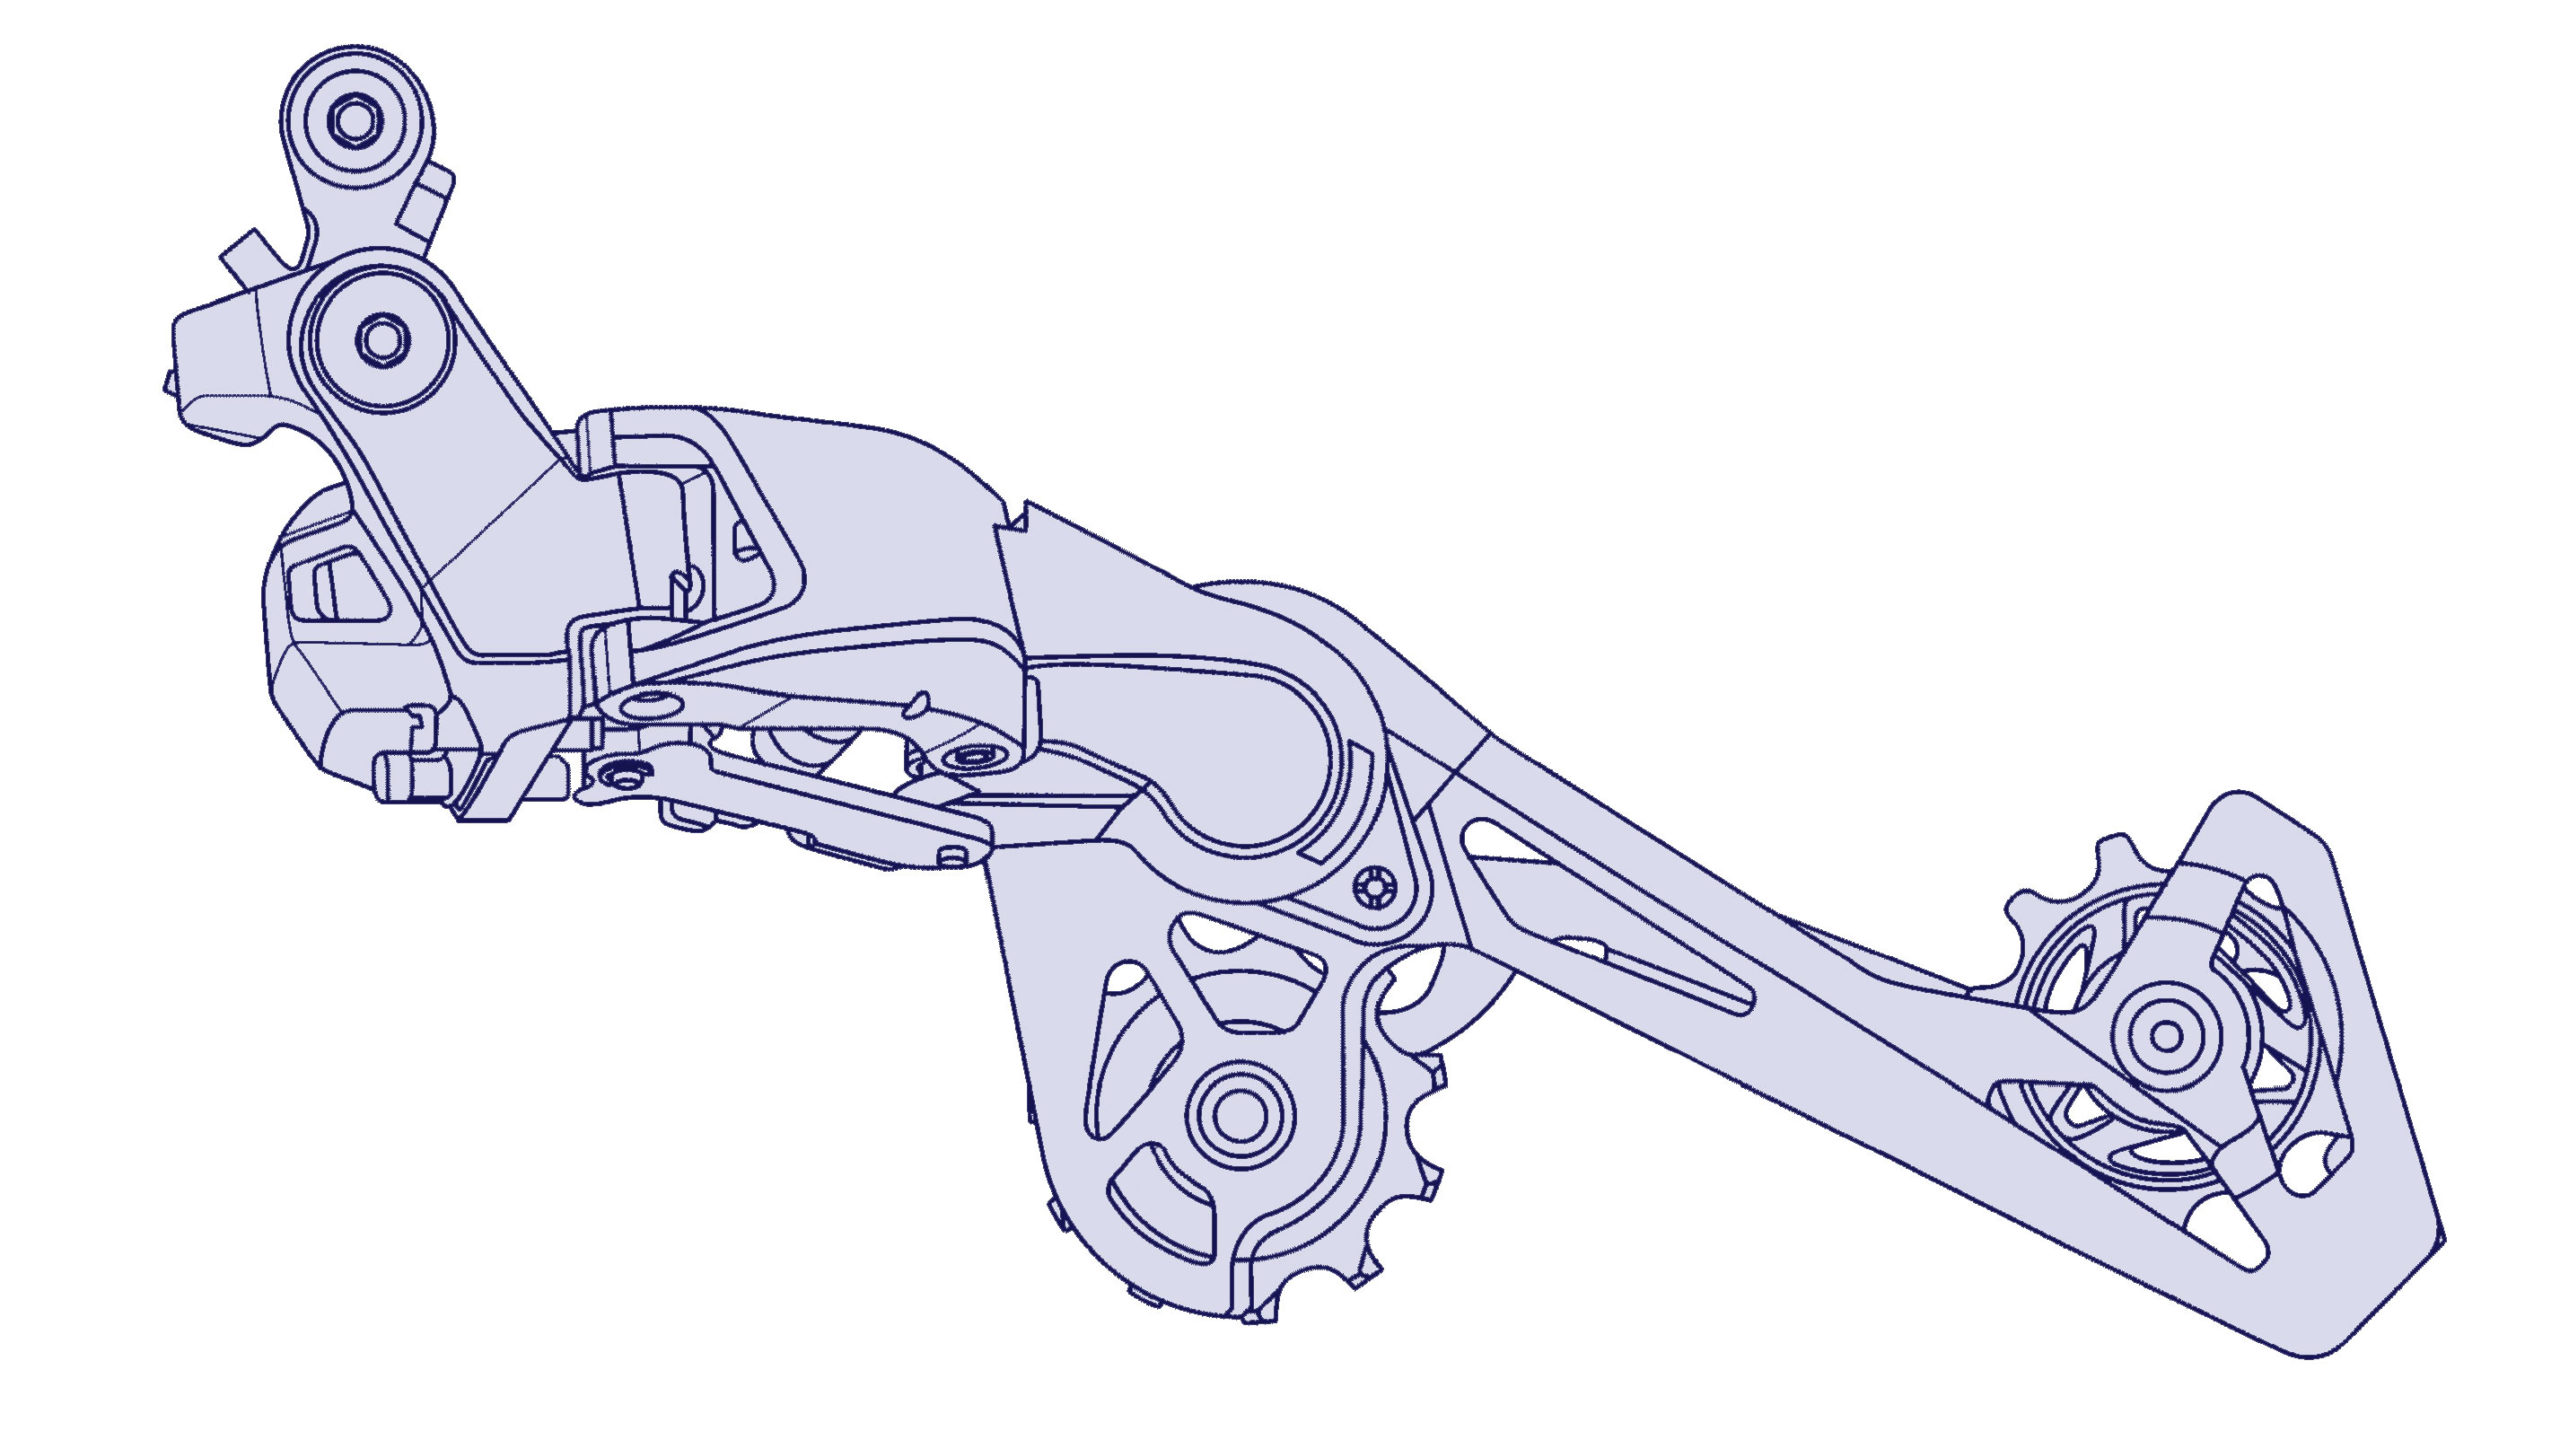 Concetto di prototipo di deragliatore a cambio elettronico galleggiante resistente agli urti con brevetto Shimano Di2, meccanismo posteriore esteso